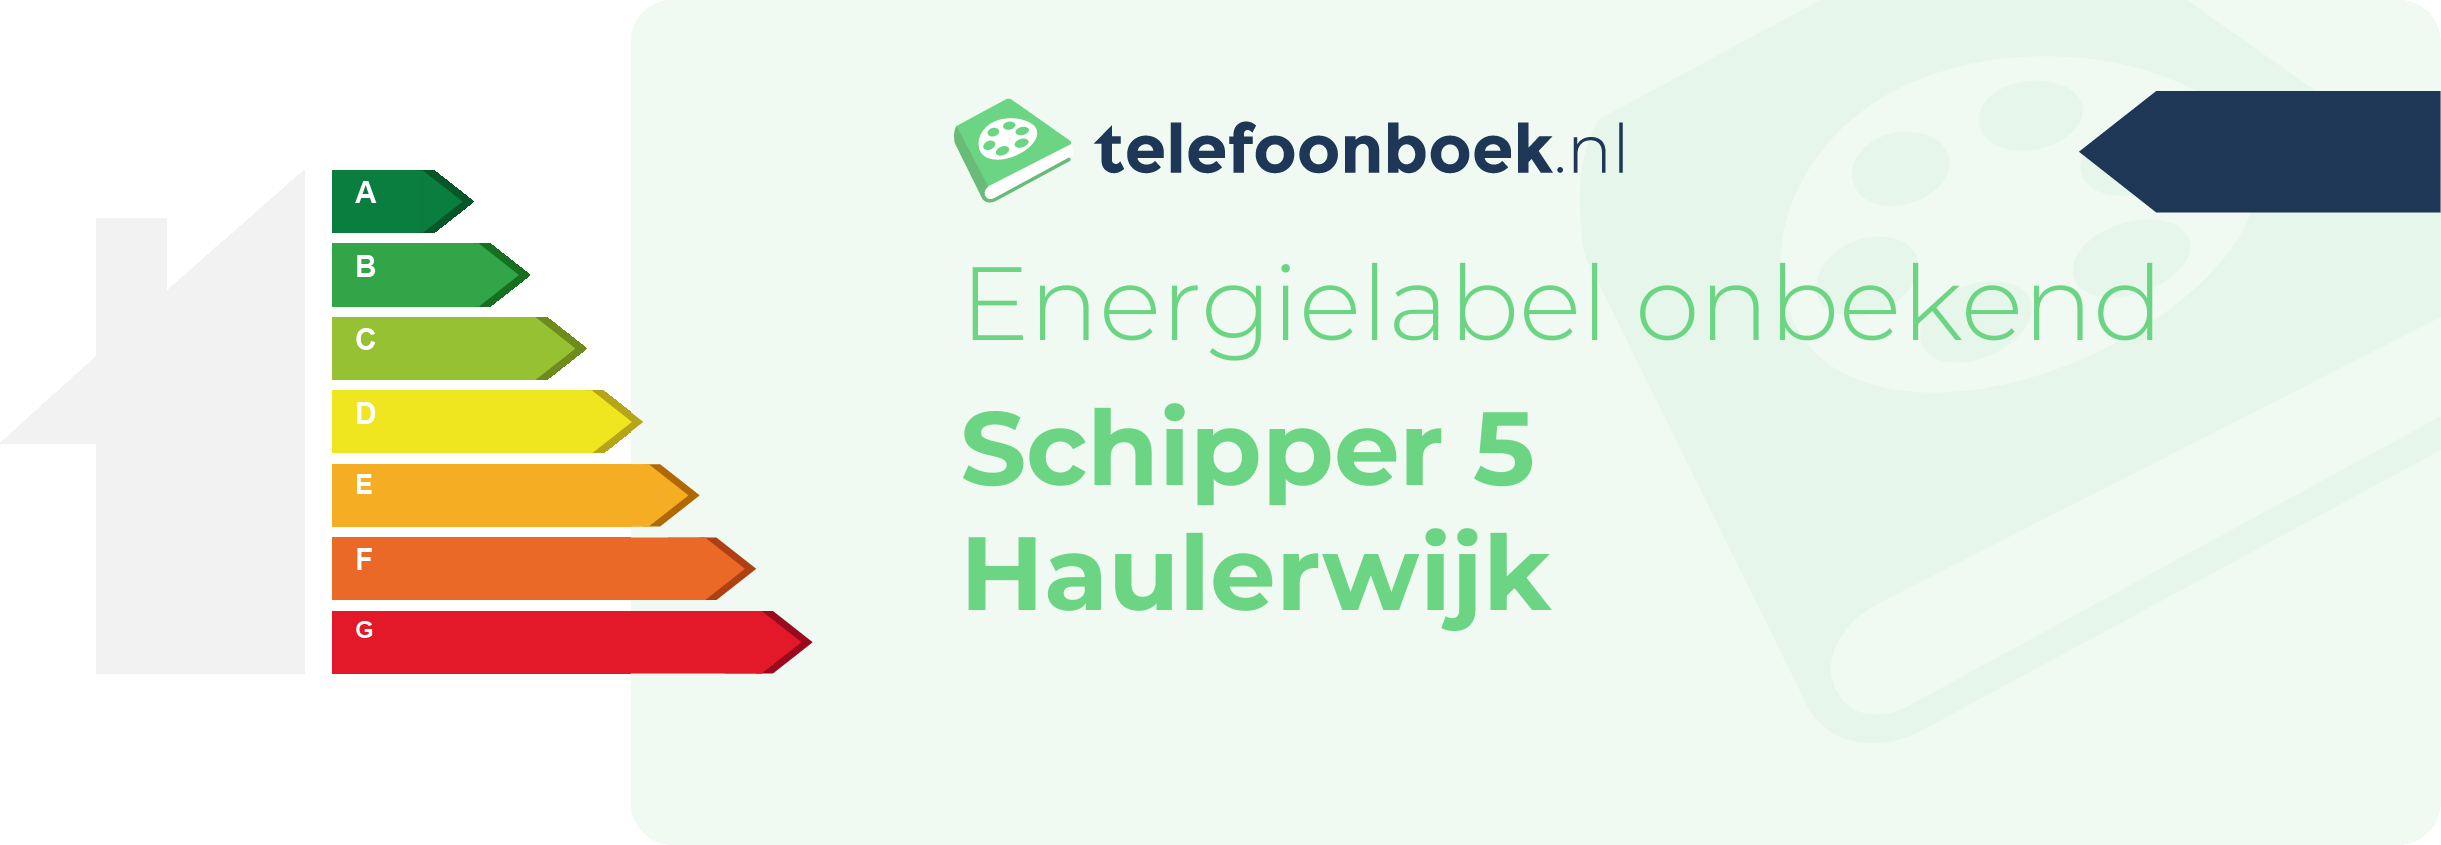 Energielabel Schipper 5 Haulerwijk